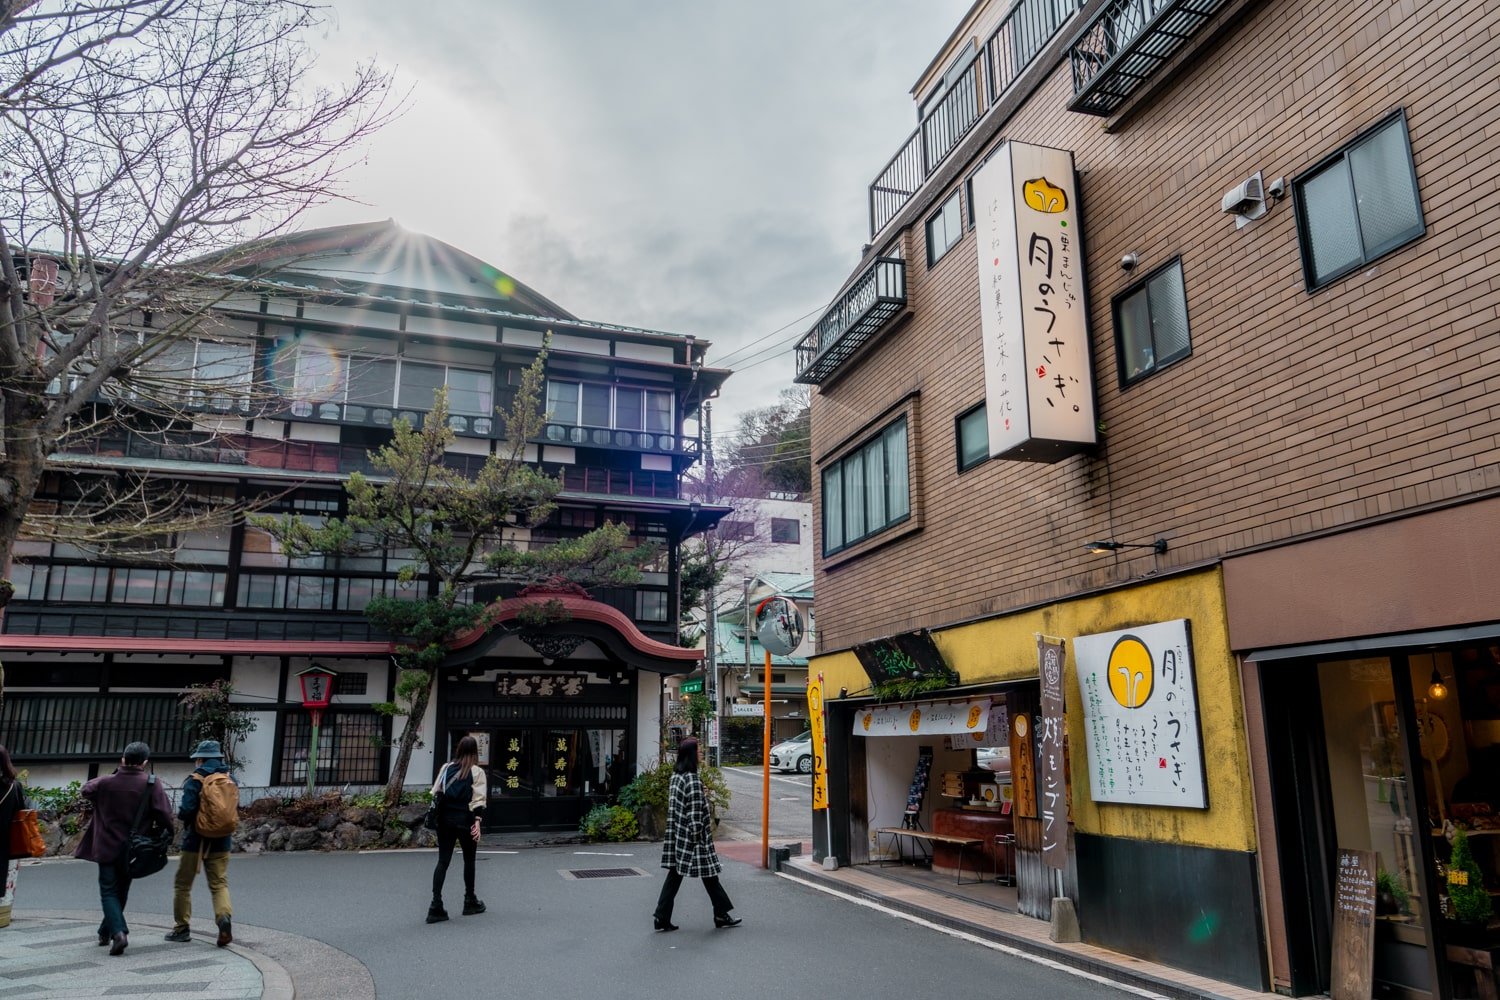 A downtown scene in Hakone-Yumoto with local ryokan